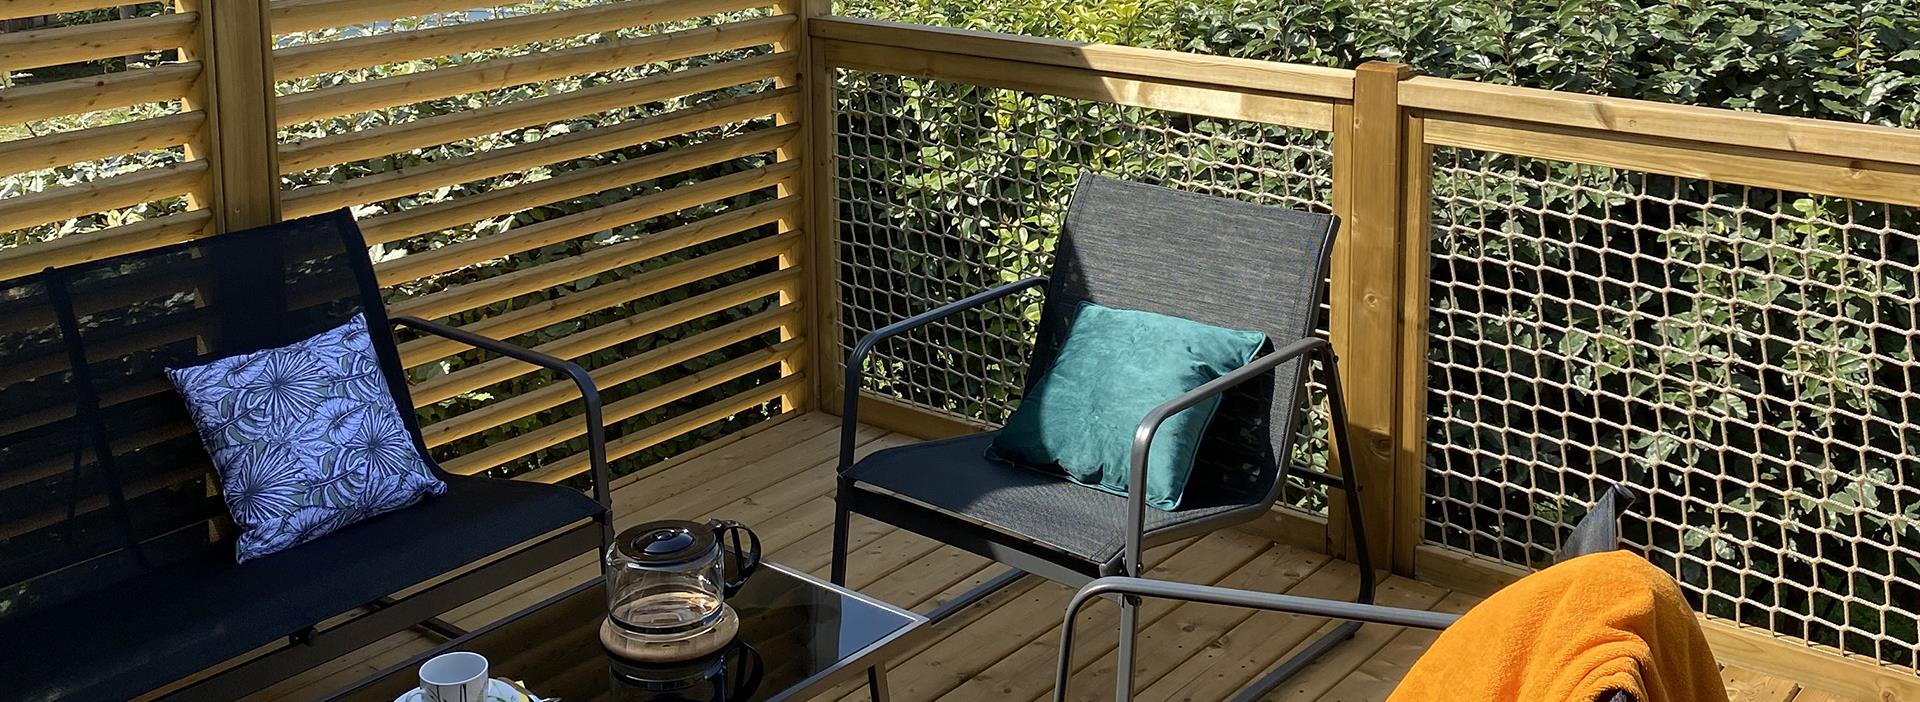 La terraza semi-cubierta con muebles de jardín y tumbonas del mobil home Premium jardín, en alquiler en el camping Les Amandiers en el Hérault